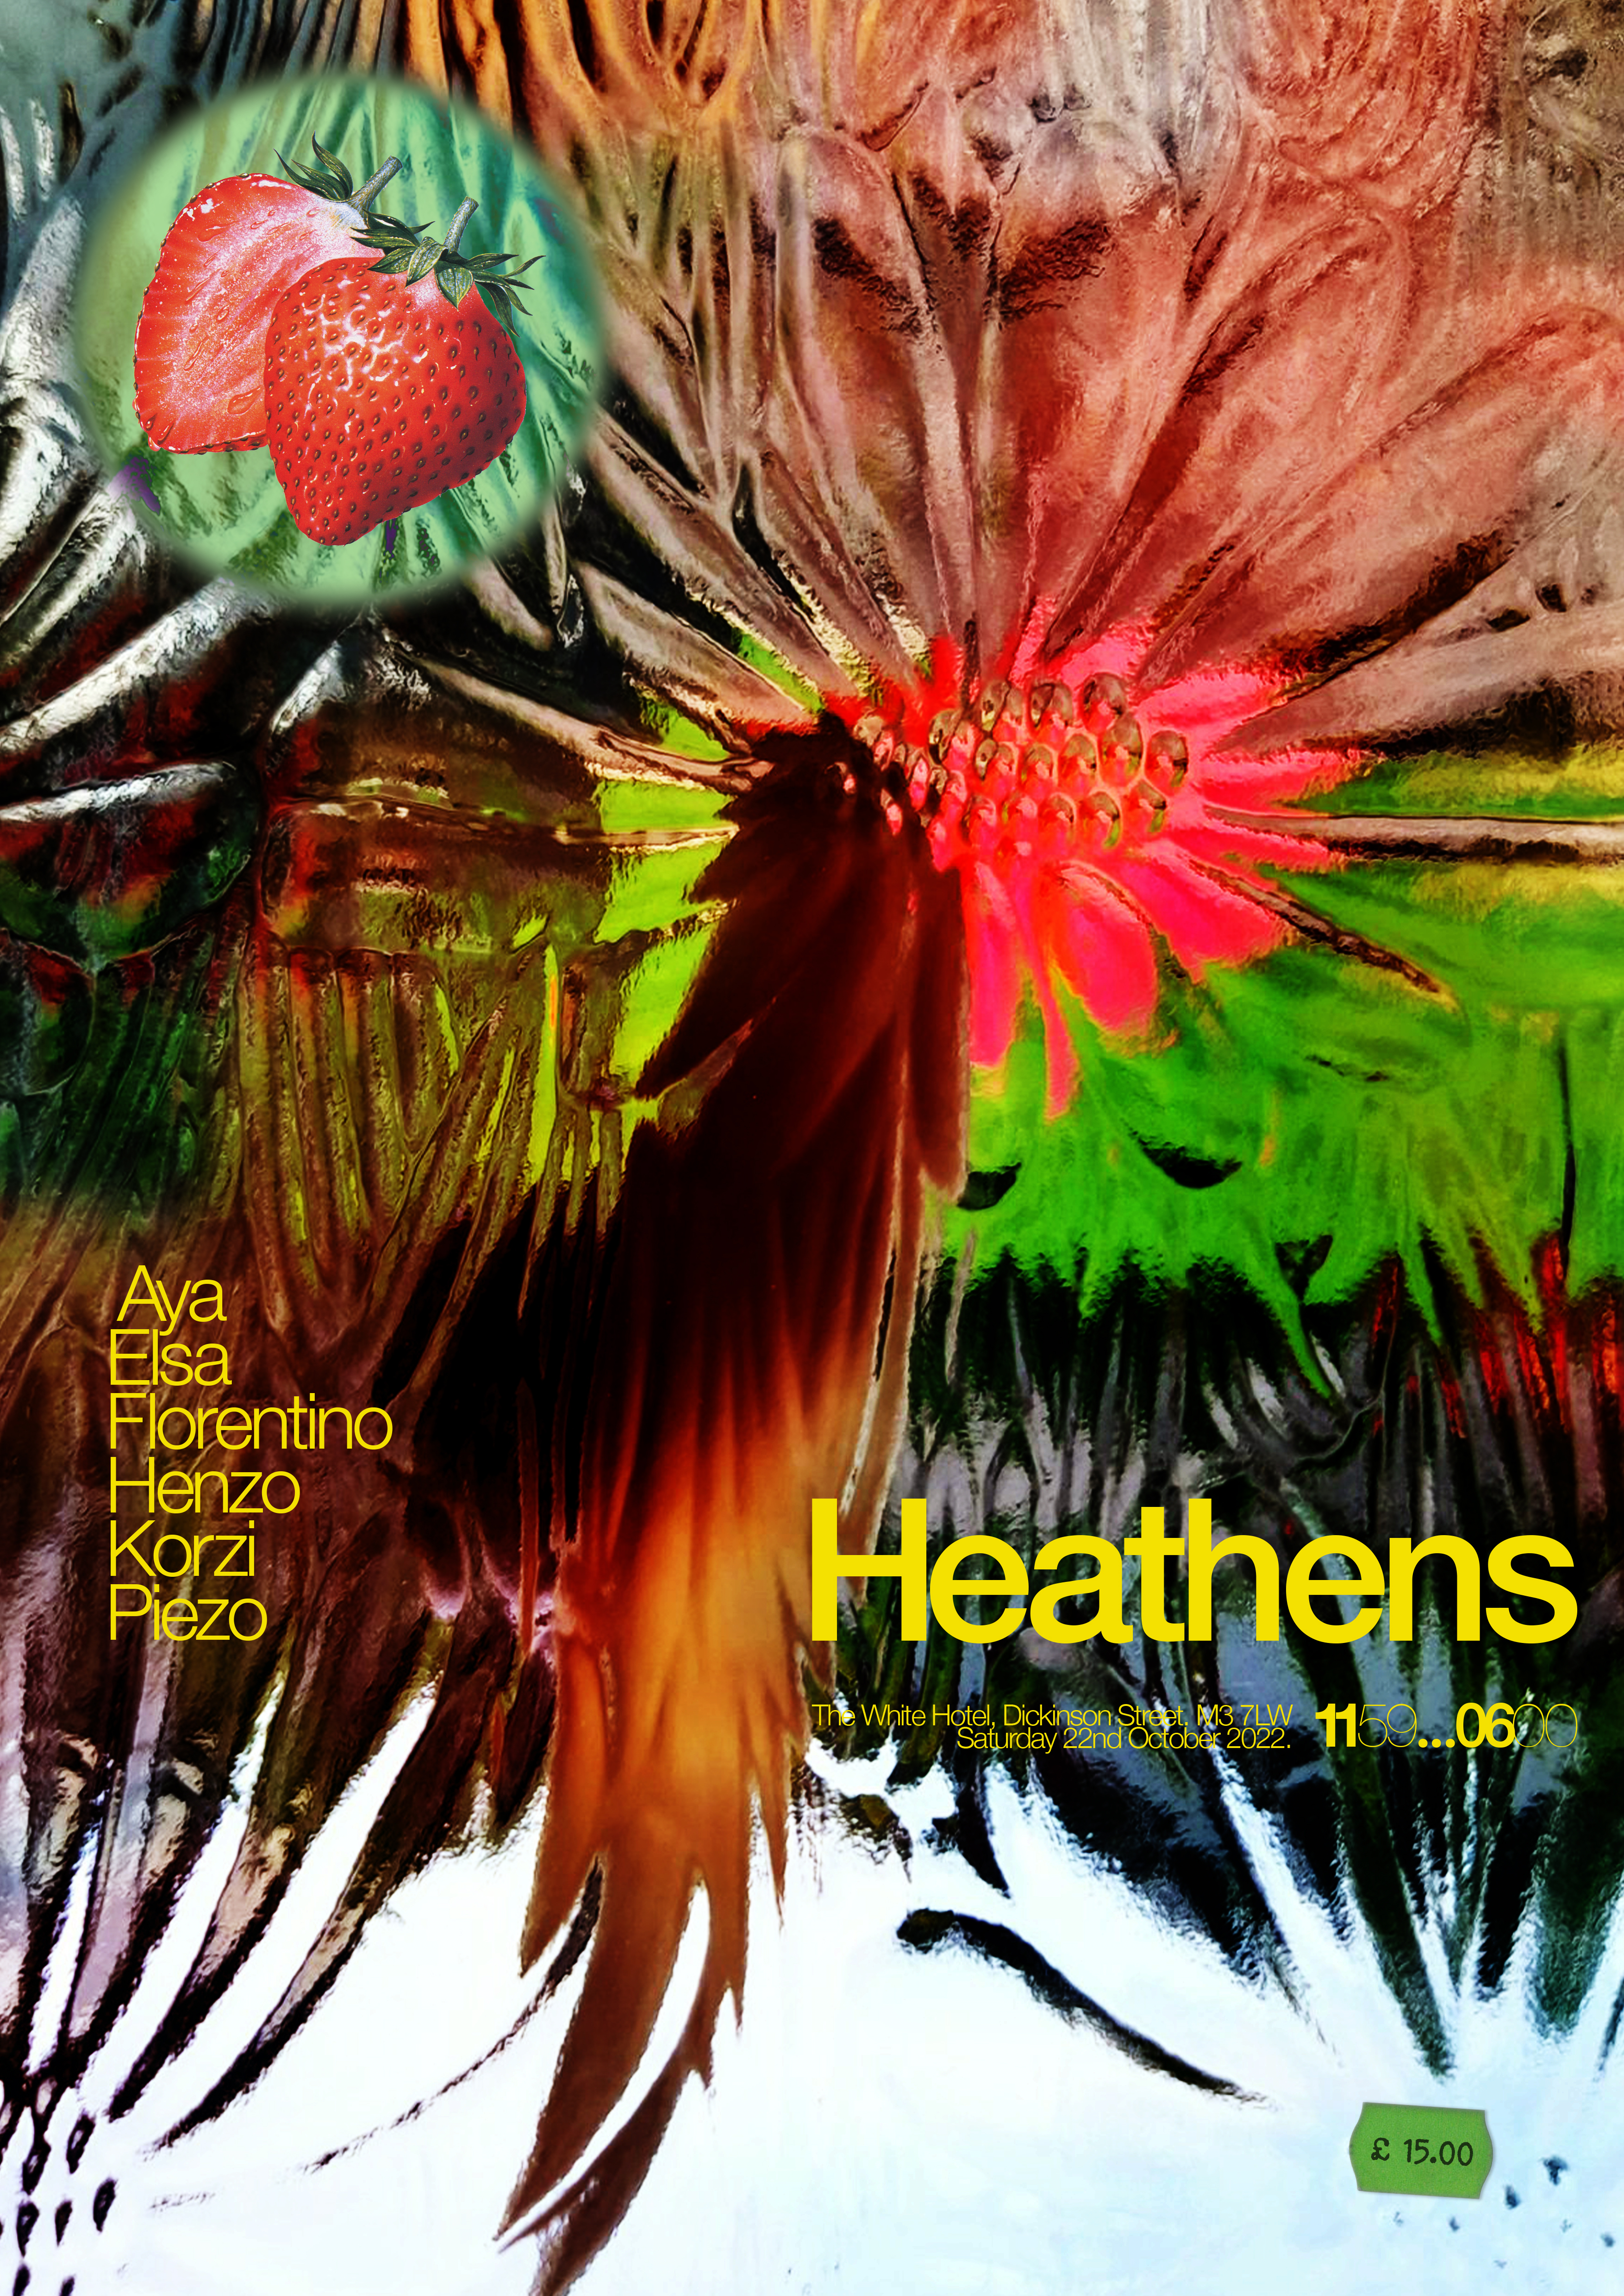 Heathens' First Birthday - Flyer front